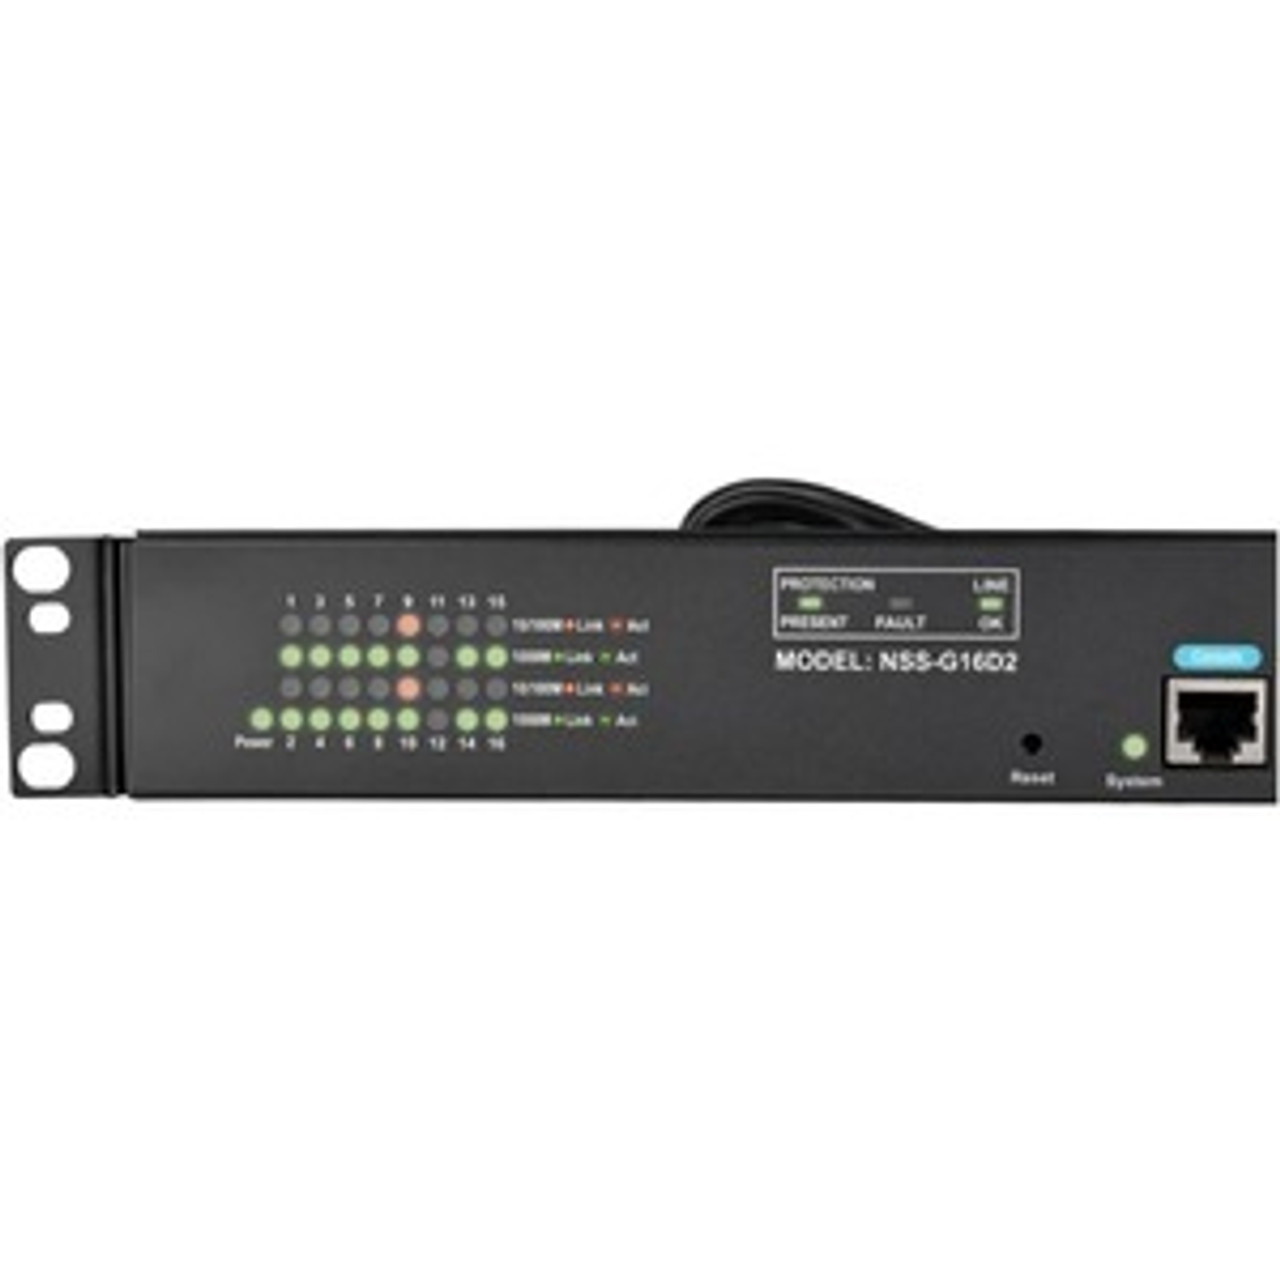 Tripp Lite 16-Port Gigabit Ethernet Switch L2 Managed w/ 8-Outlet PDU 120V